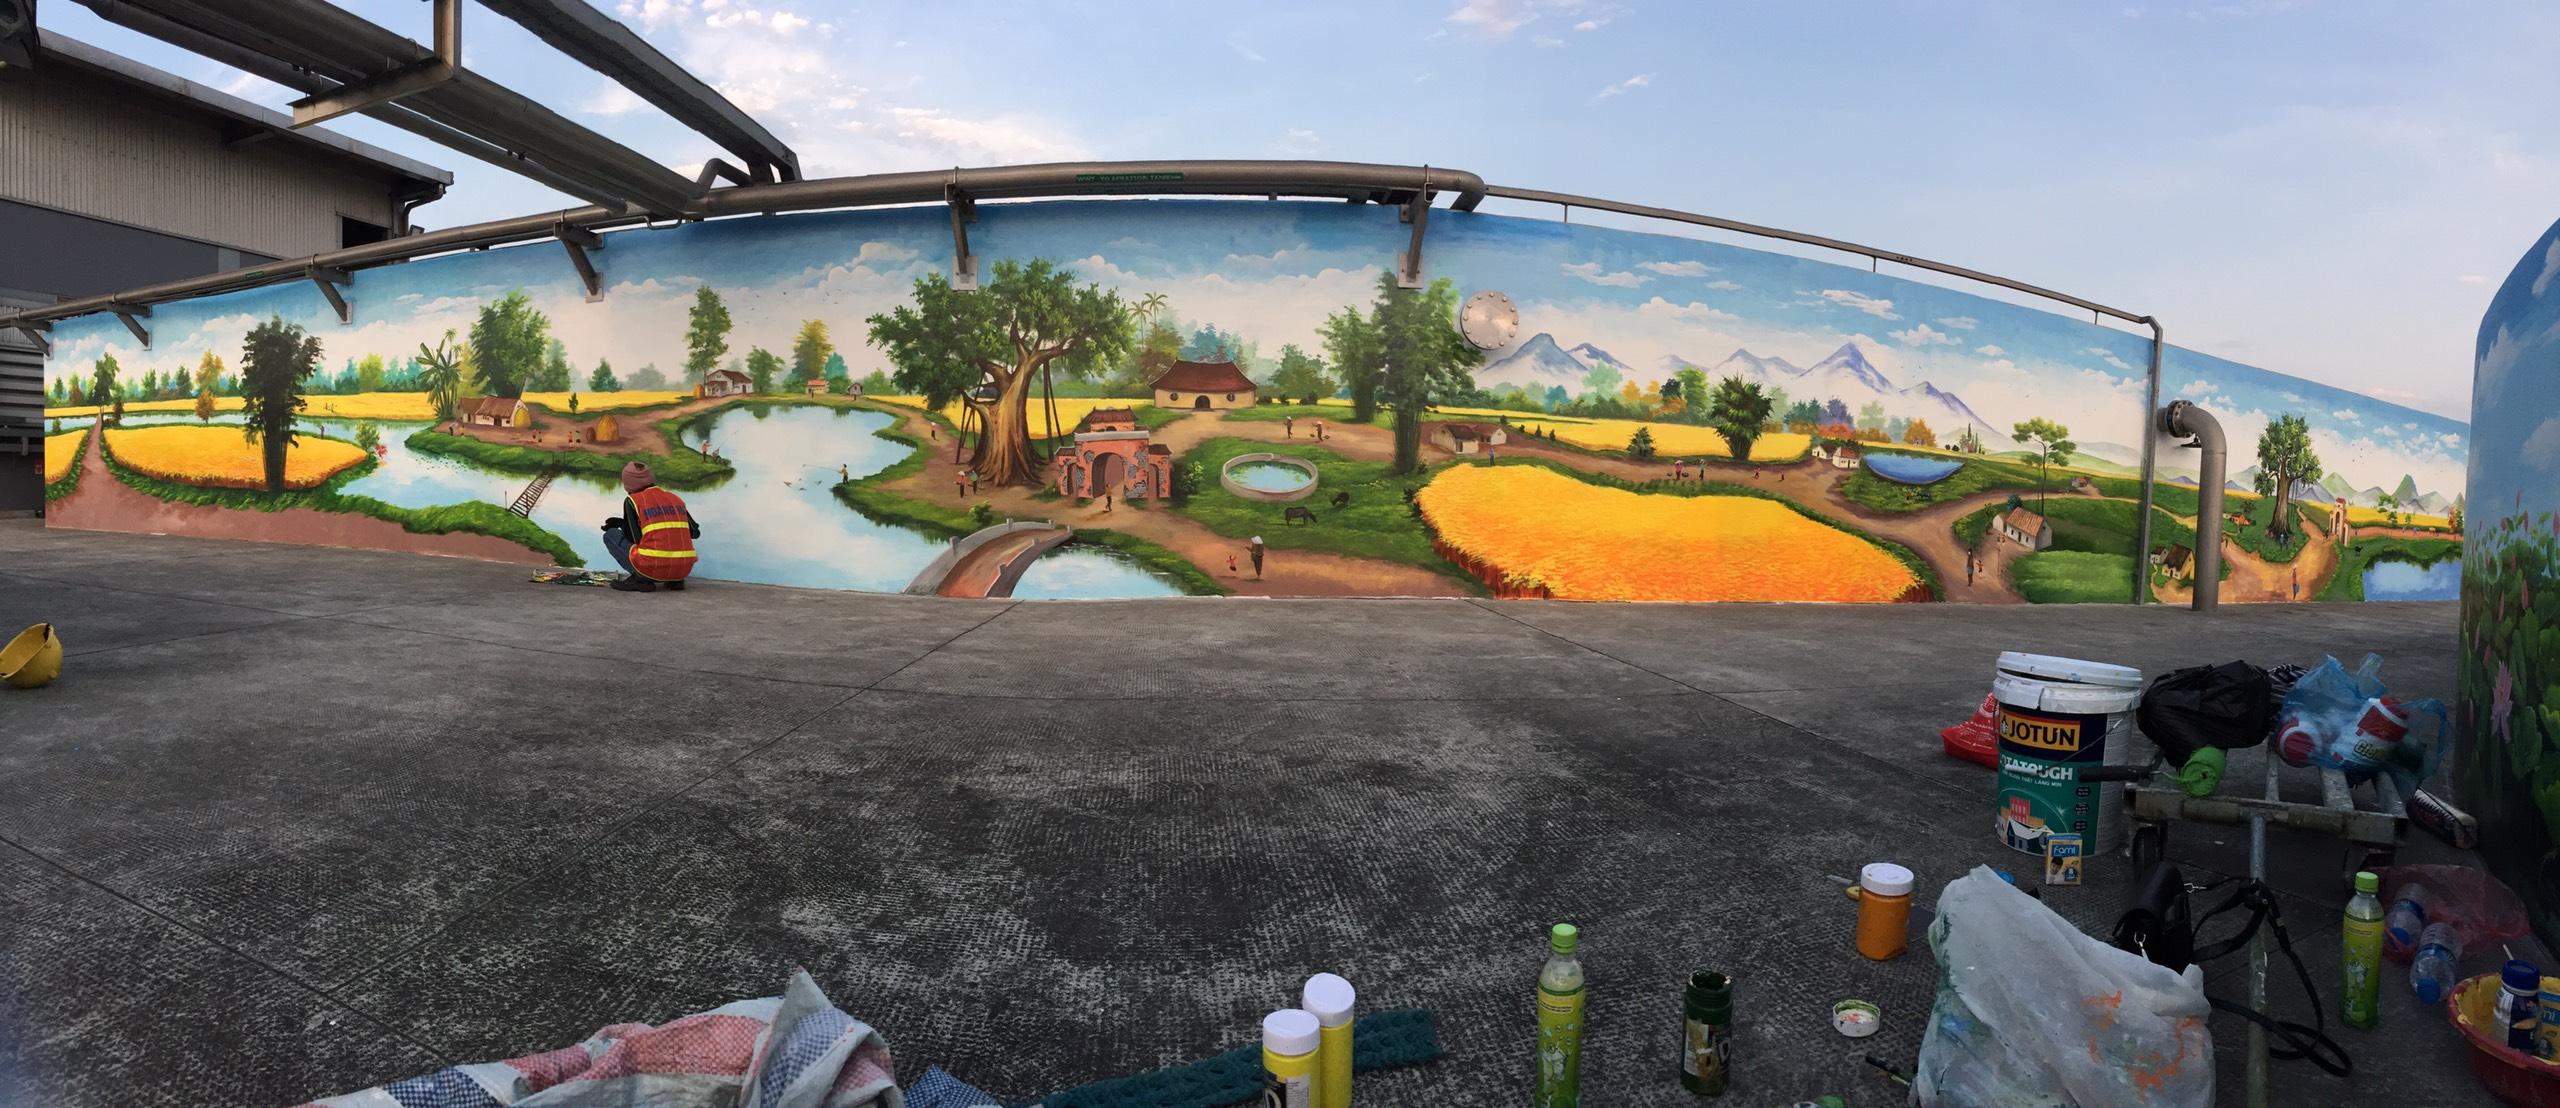 Công trình vẽ tranh ngoài trời cho cty Nestle Phùng Chí Kiên, Mỹ hào, Hưng Yên